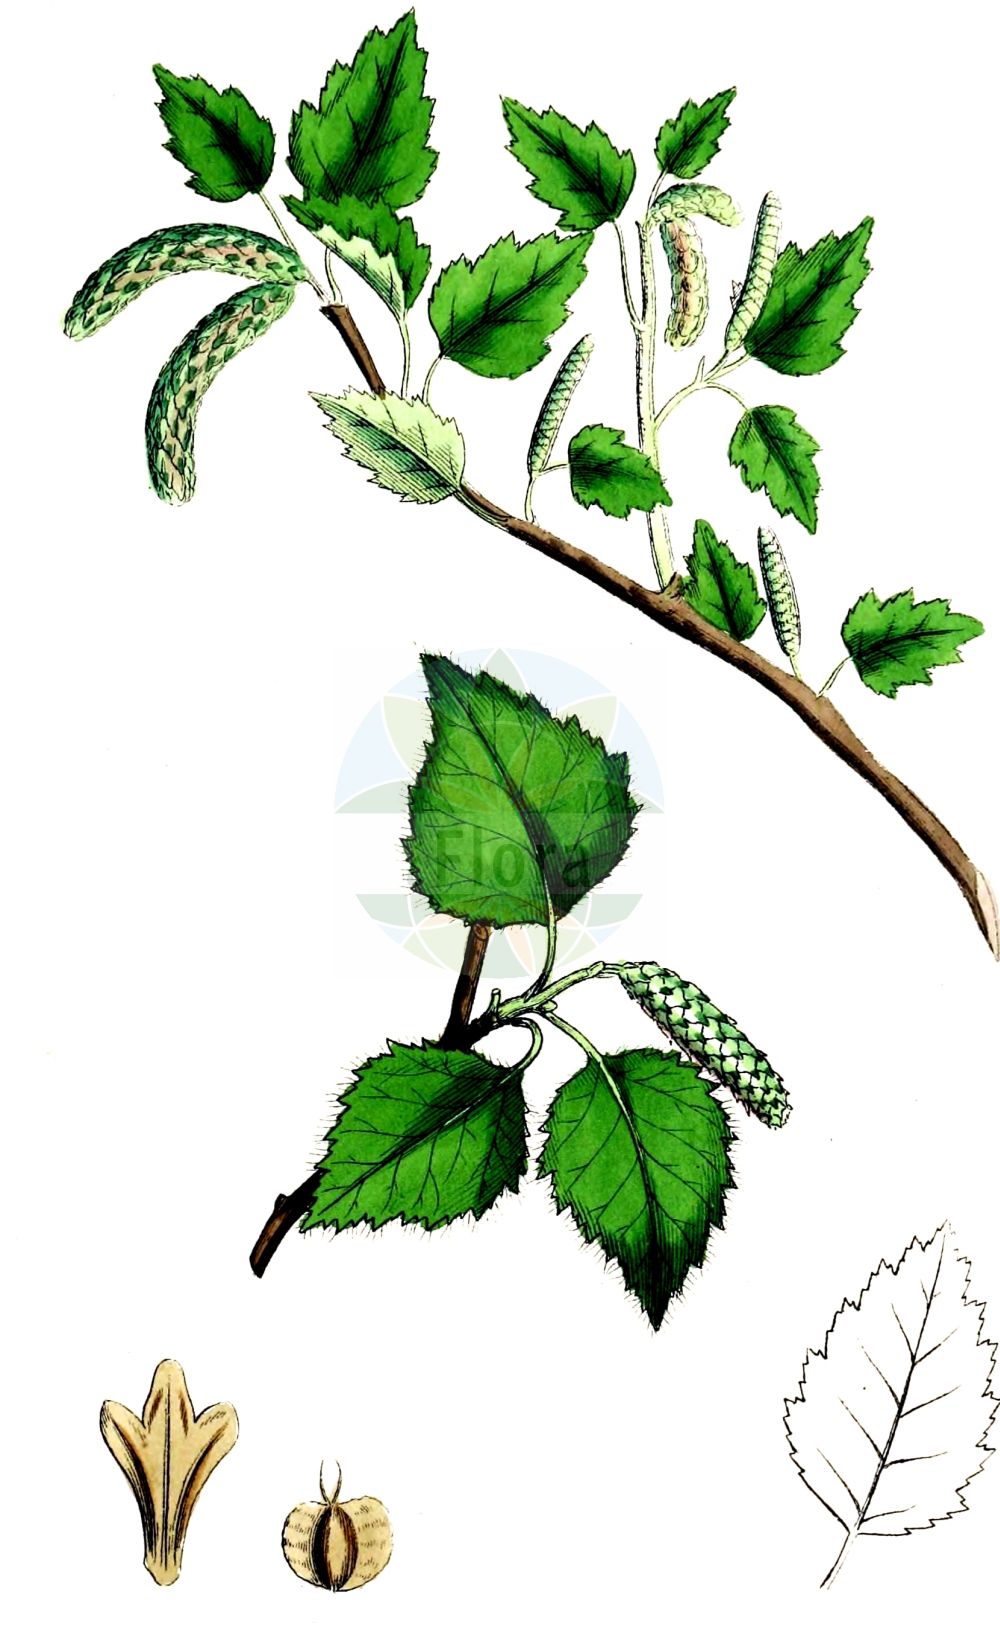 Historische Abbildung von Betula pubescens (Moor-Birke - Downy Birch). Das Bild zeigt Blatt, Bluete, Frucht und Same. ---- Historical Drawing of Betula pubescens (Moor-Birke - Downy Birch). The image is showing leaf, flower, fruit and seed.(Betula pubescens,Moor-Birke,Downy Birch,Betula pubescens,Betula pubescens var. typica,Moor-Birke,Behaarte Birke,Besen-Birke,Gewoehnliche Moor-Birke,Downy Birch,Pubescent Birch,Swamp Birch,White Birch,Betula,Birke,Birch,Betulaceae,Birkengewächse,Birch family,Blatt,Bluete,Frucht,Same,leaf,flower,fruit,seed,Sowerby (1790-1813))